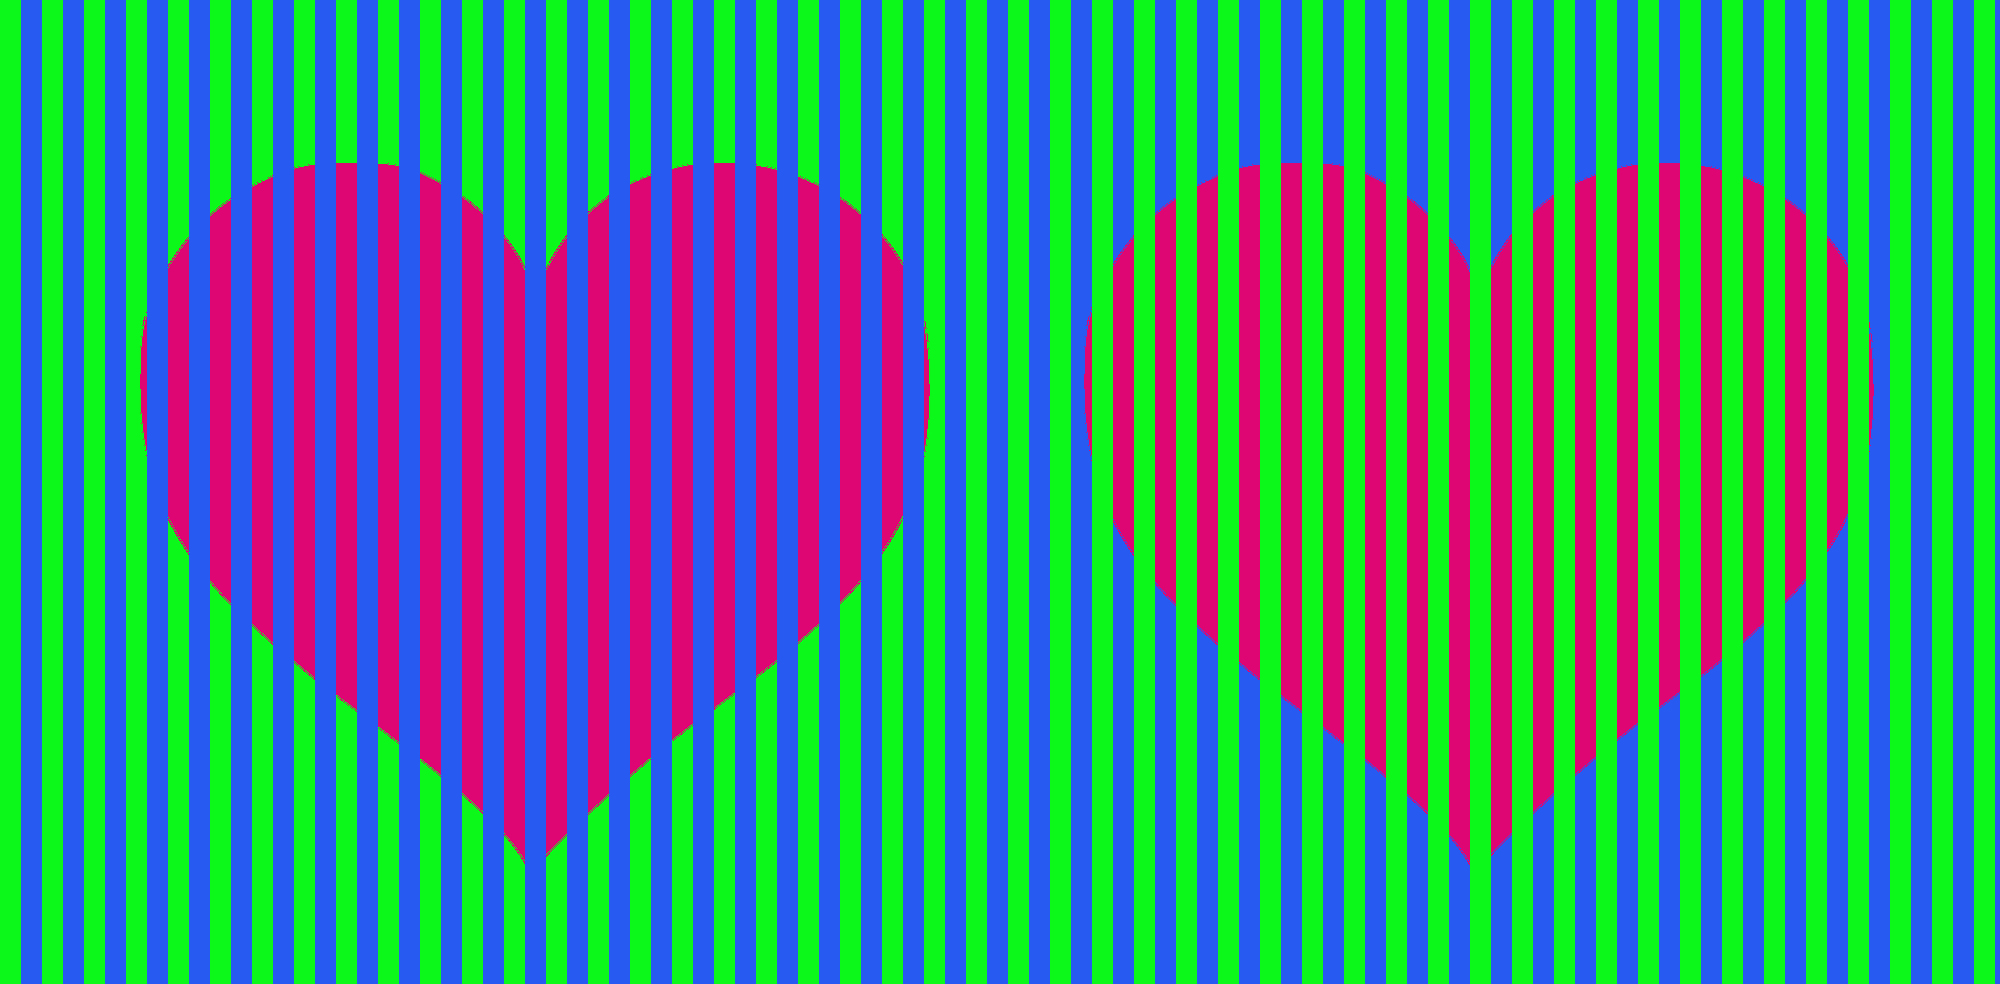 Цветок обмана. Цветовые оптические иллюзии. Оптические иллюзии с цветами. Оптическая иллюзия цветная. Оптическая иллюзия разные цвета.